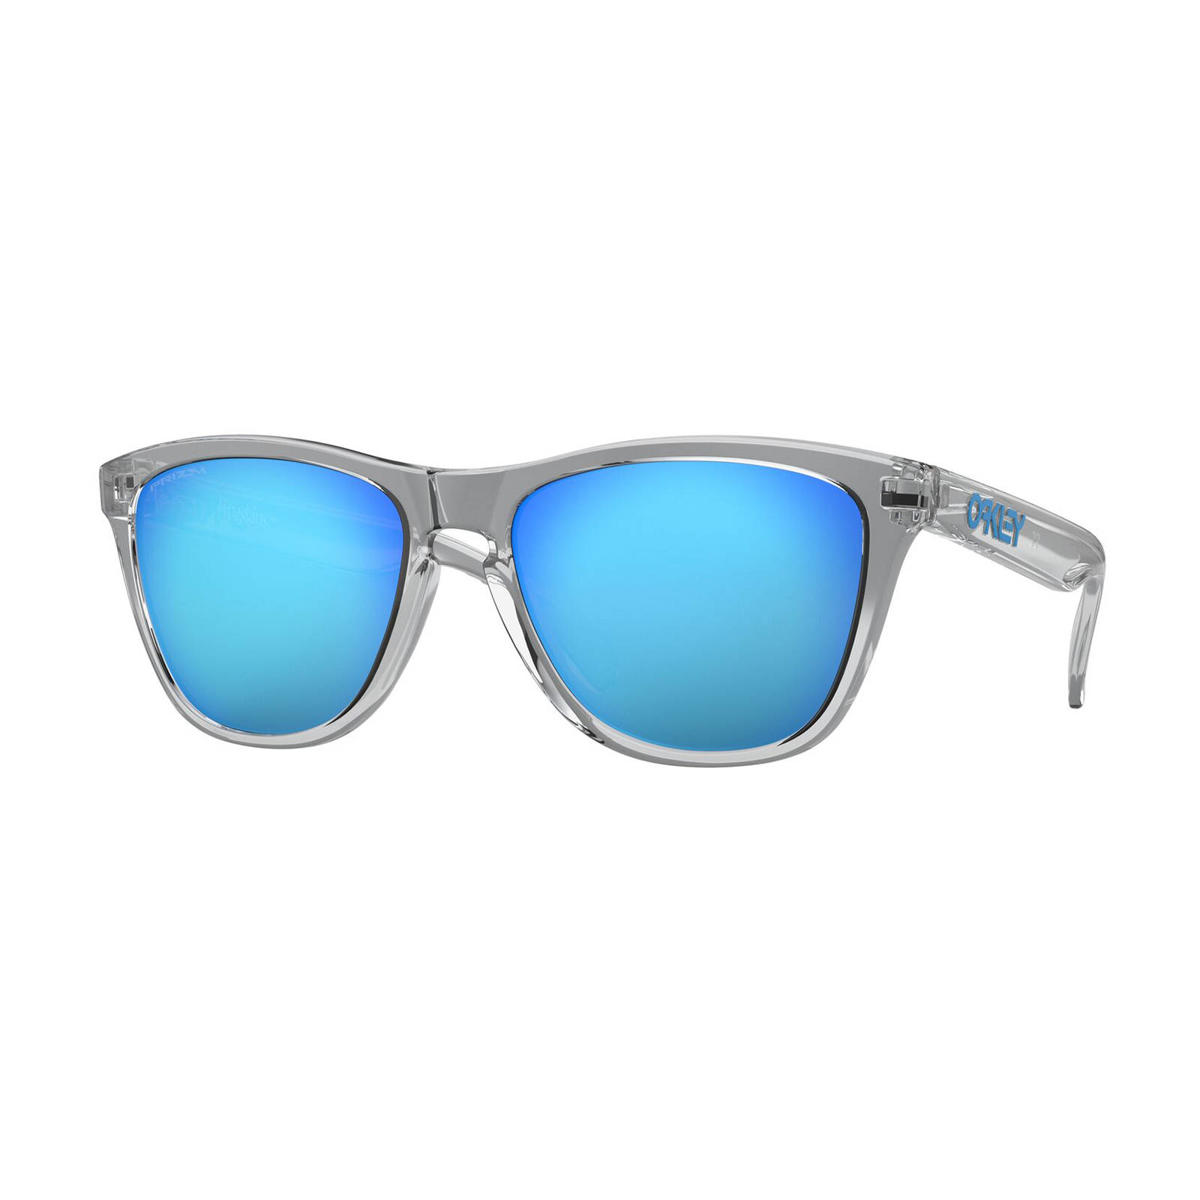 Initiatief onvoorwaardelijk Mammoet Oakley zonnebril Frogskins transparant/blauw | wehkamp